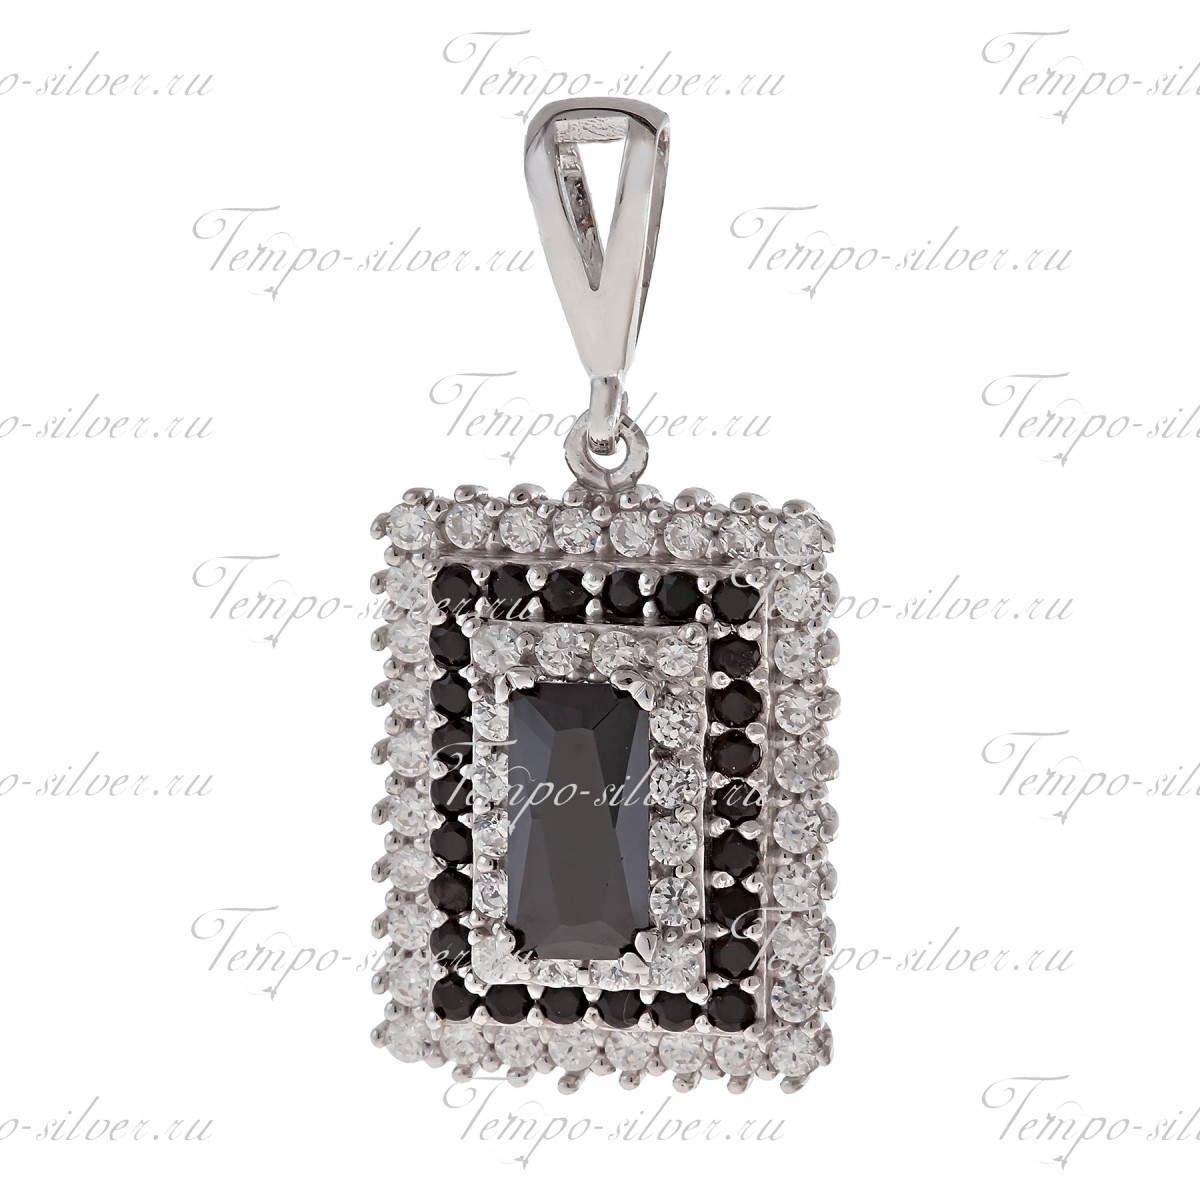 Подвеска из серебра прямоугольной формы с черно-белыми камнями цена